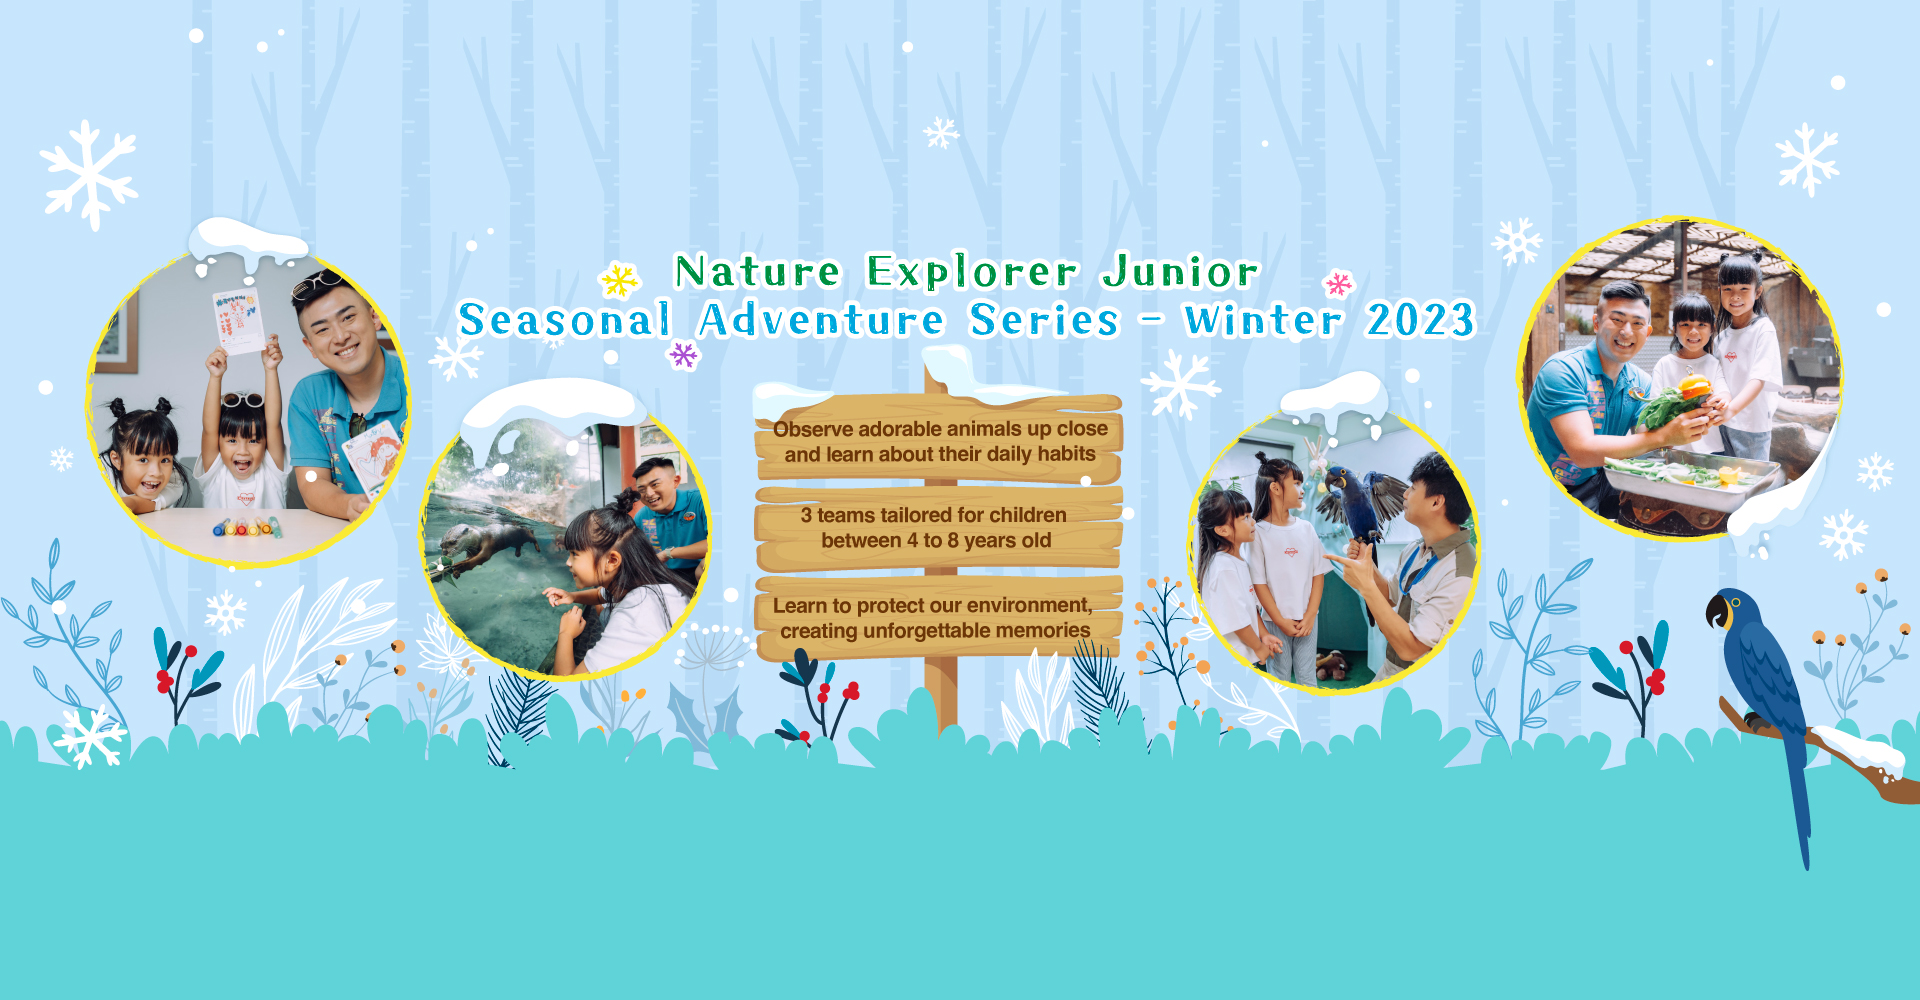 http://media.oceanpark.com.hk/files/s3fs-public/op-winter-adventure-2023-innerpage-banner-desktop-en.jpg